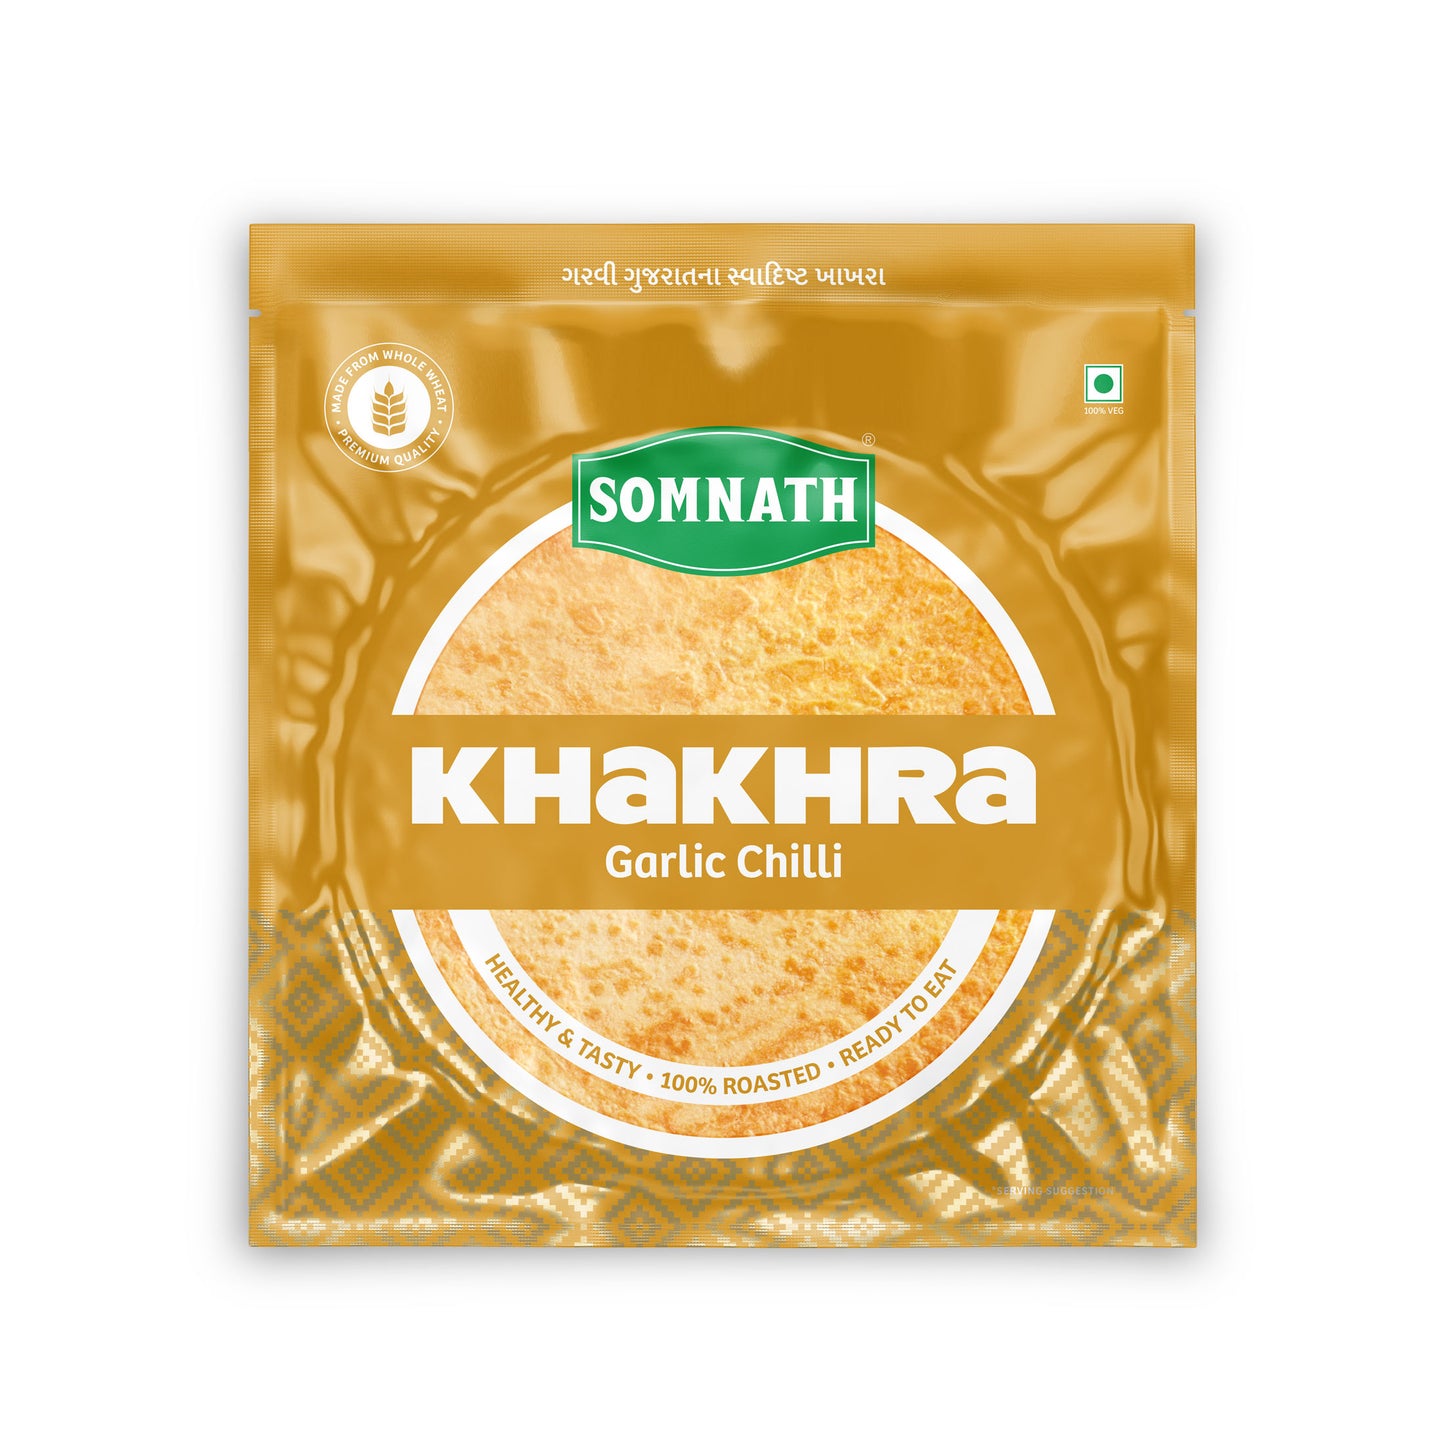 Somnath Garlic Chilli khakhra